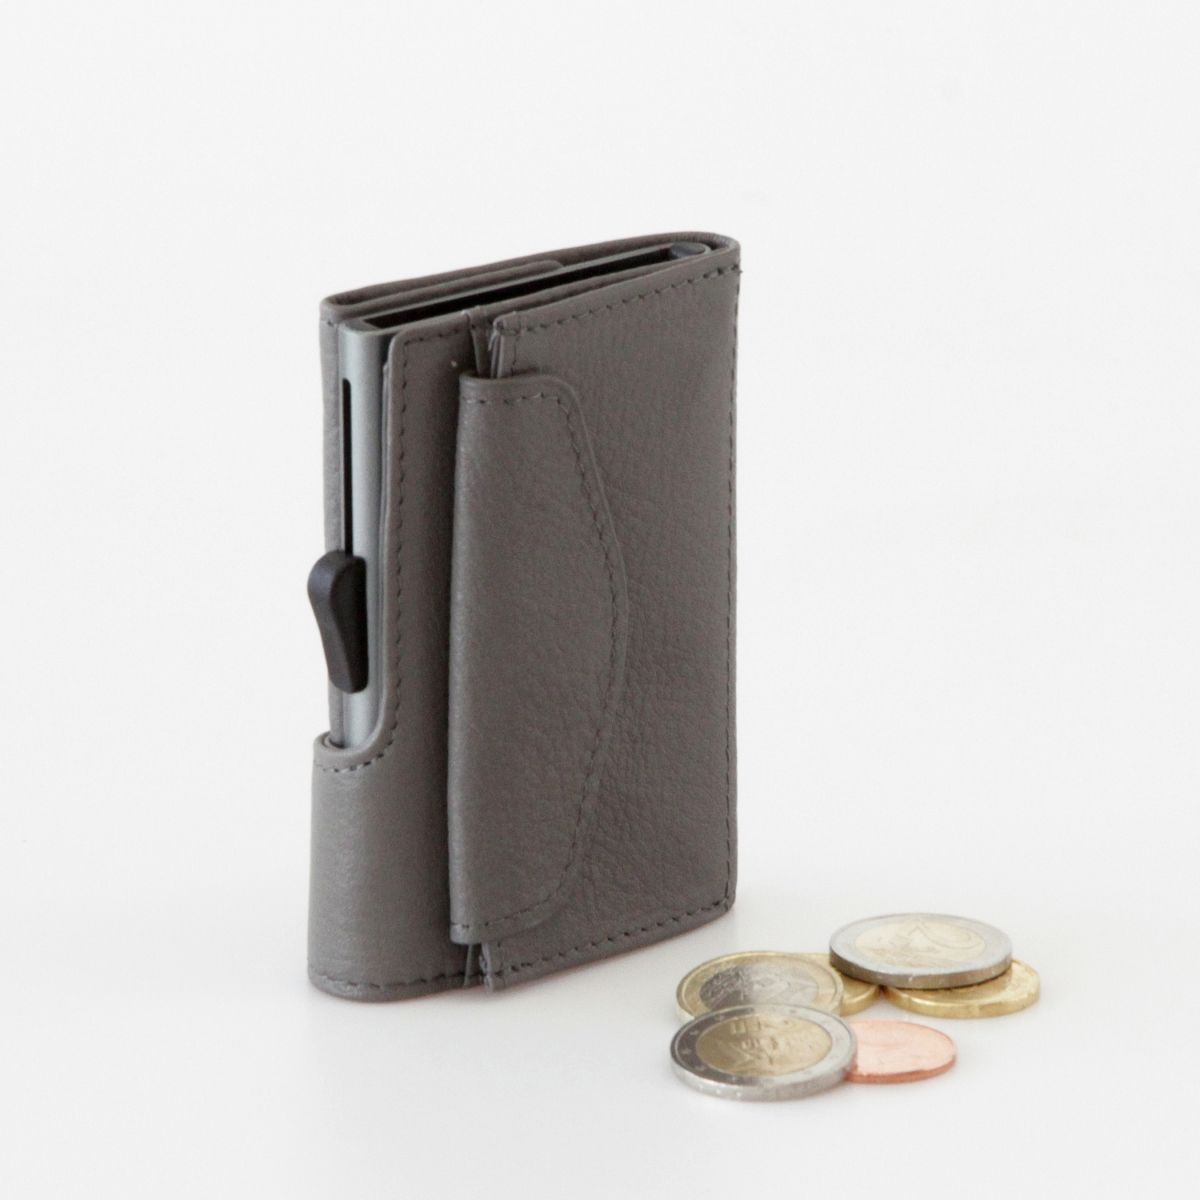 Fauré Le Page Coin Pouch - Grey Wallets, Accessories - FLP20520